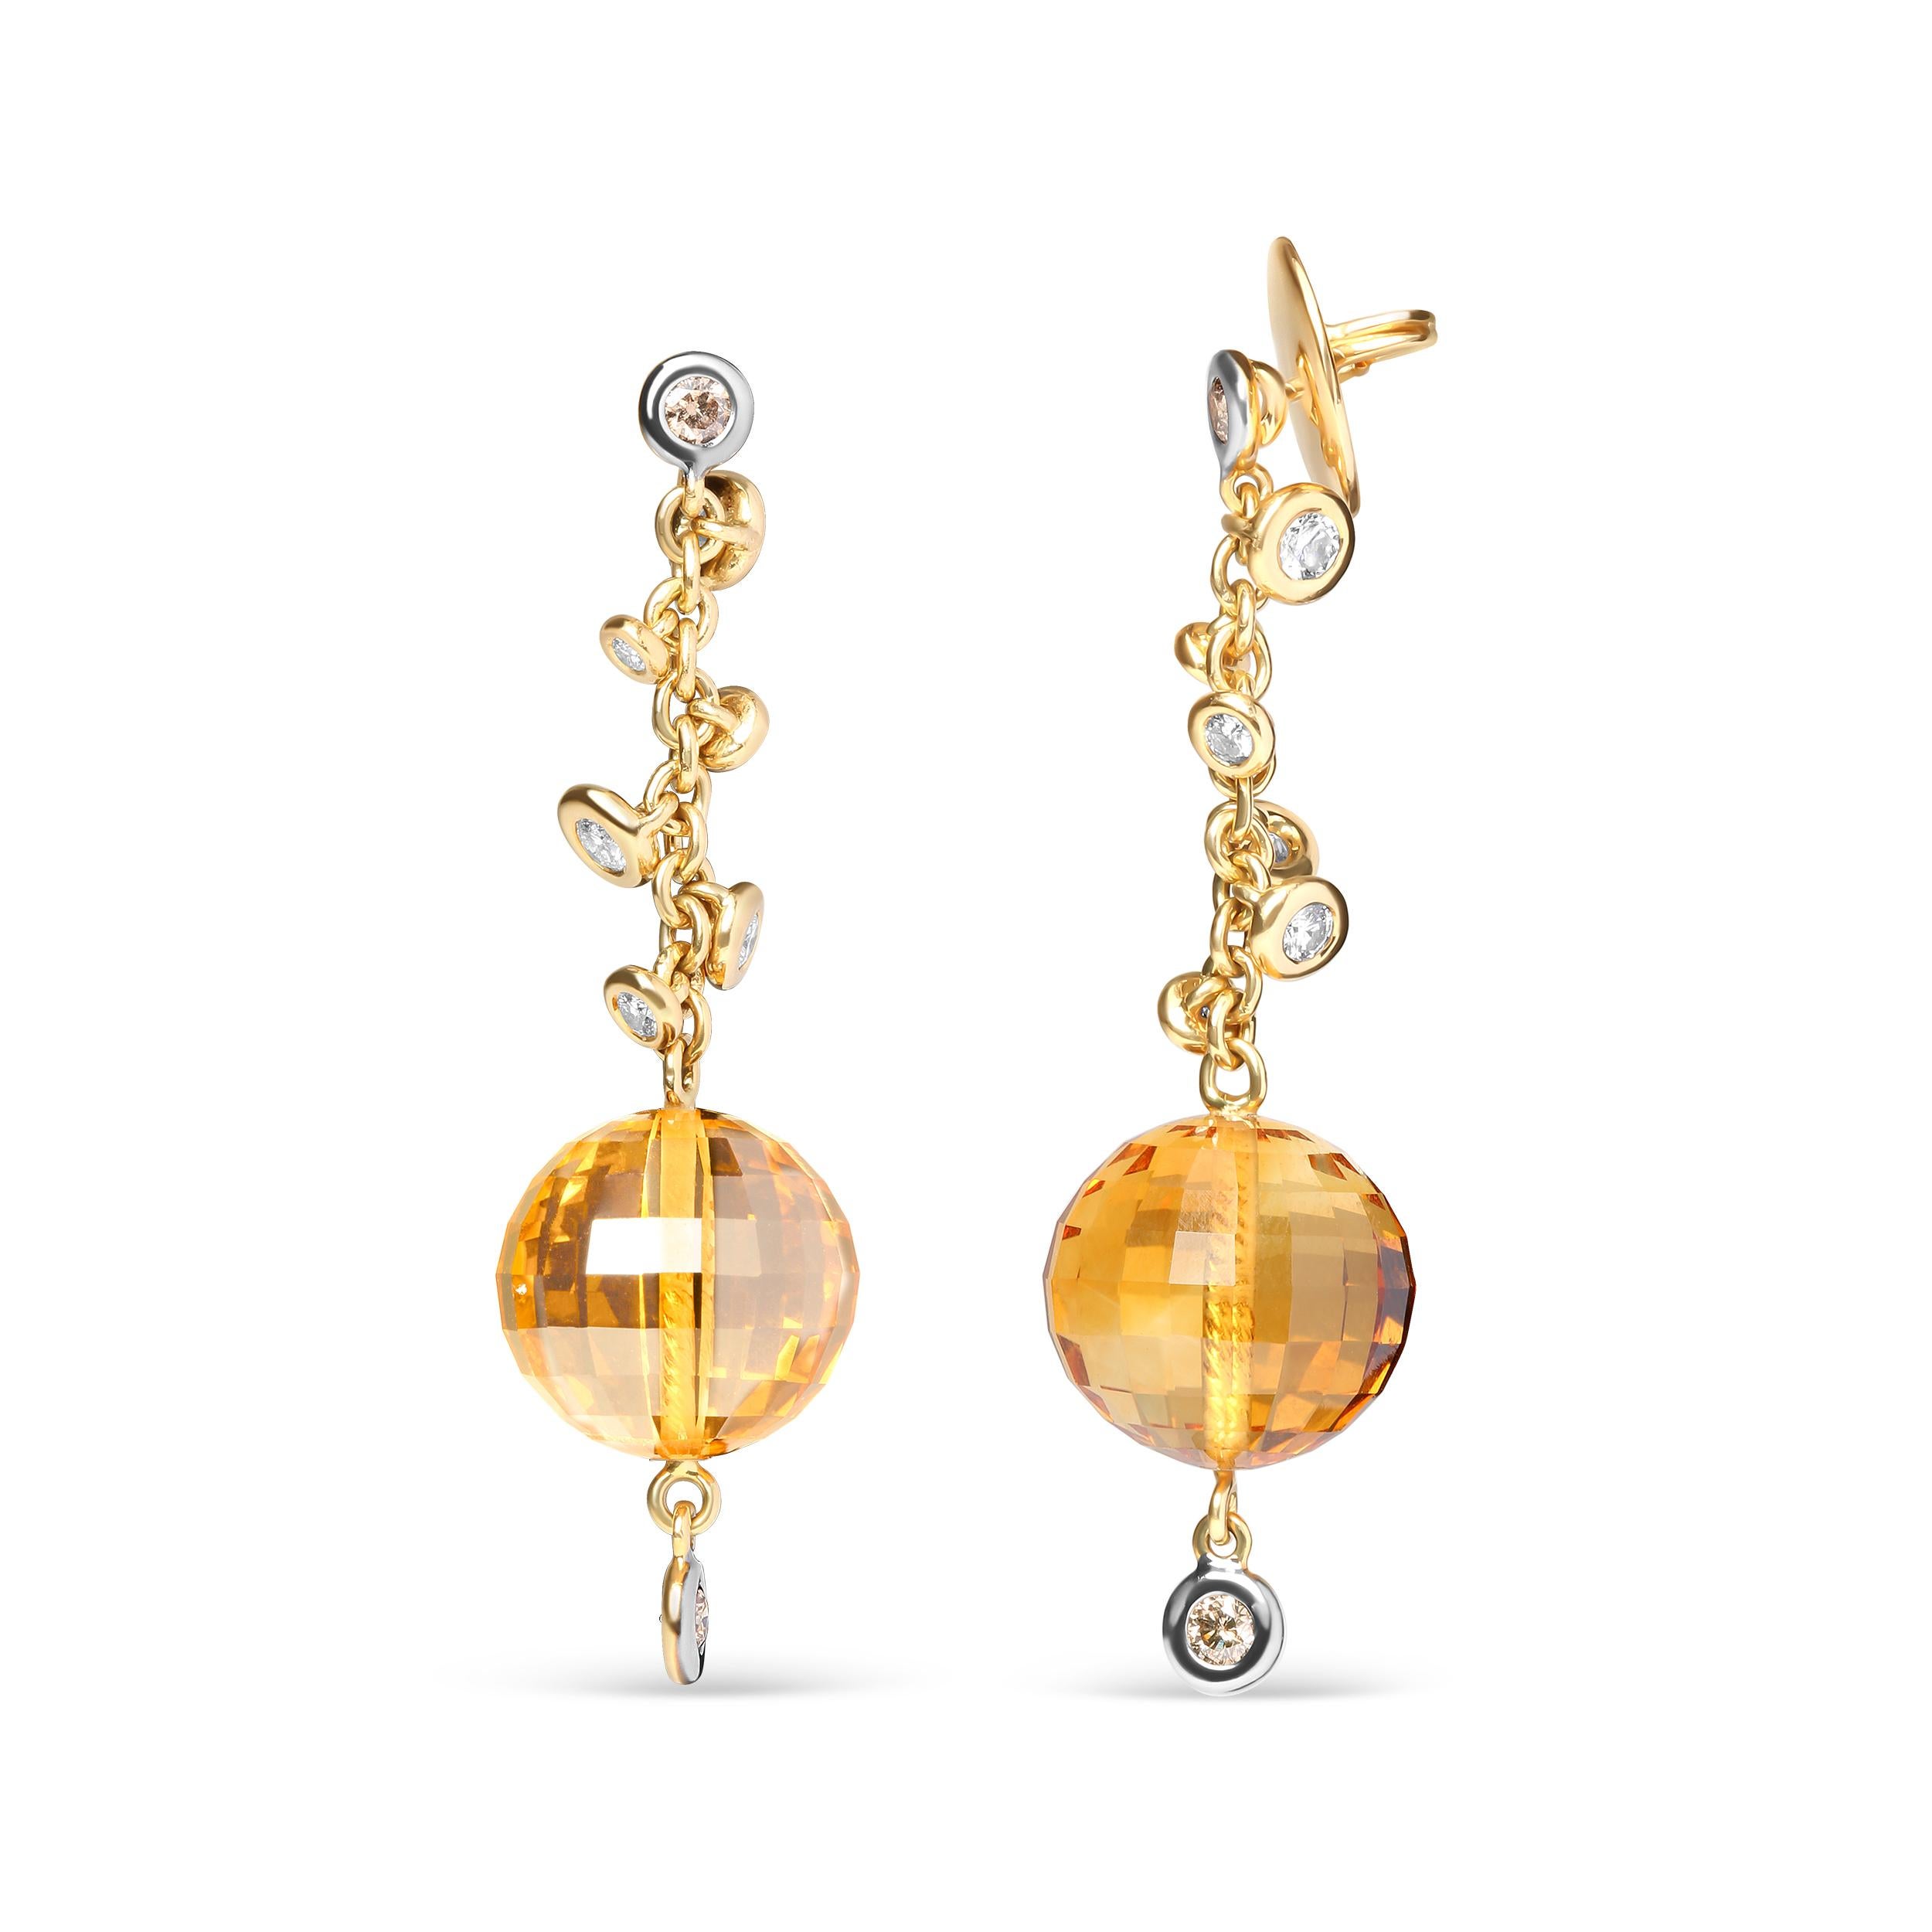 Diese Ohrringe aus 18 Karat Gelbgold haben eine großartige Bewegung, die im Licht glitzert, wenn Sie sich bewegen und Ihren Stil zeigen. An der Spitze des oberen Bügels und ganz unten befinden sich zwei runde, wärmebehandelte braune Diamanten in